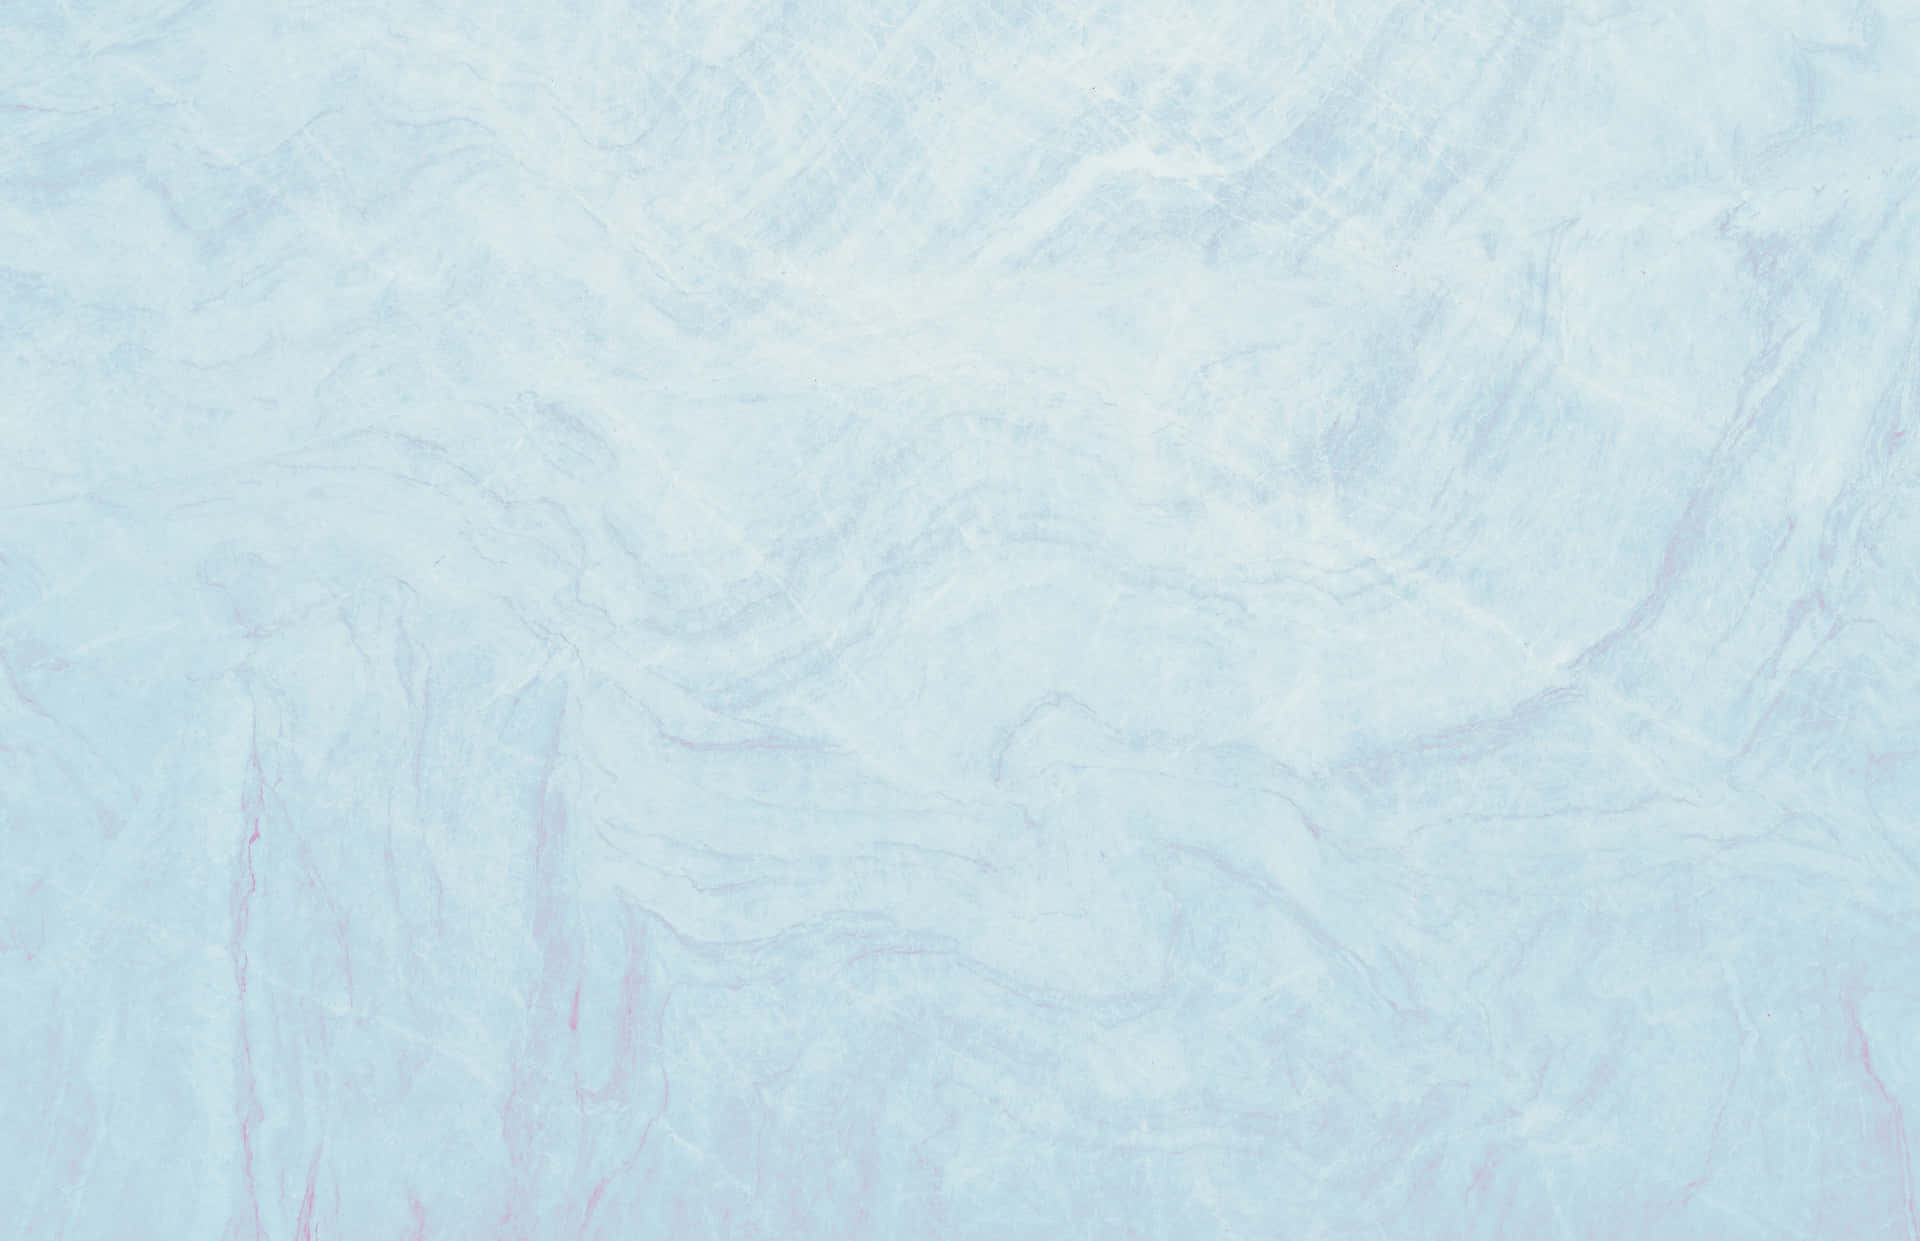 Einblauer Hintergrund Mit Einer Weißen Schneeflocke.